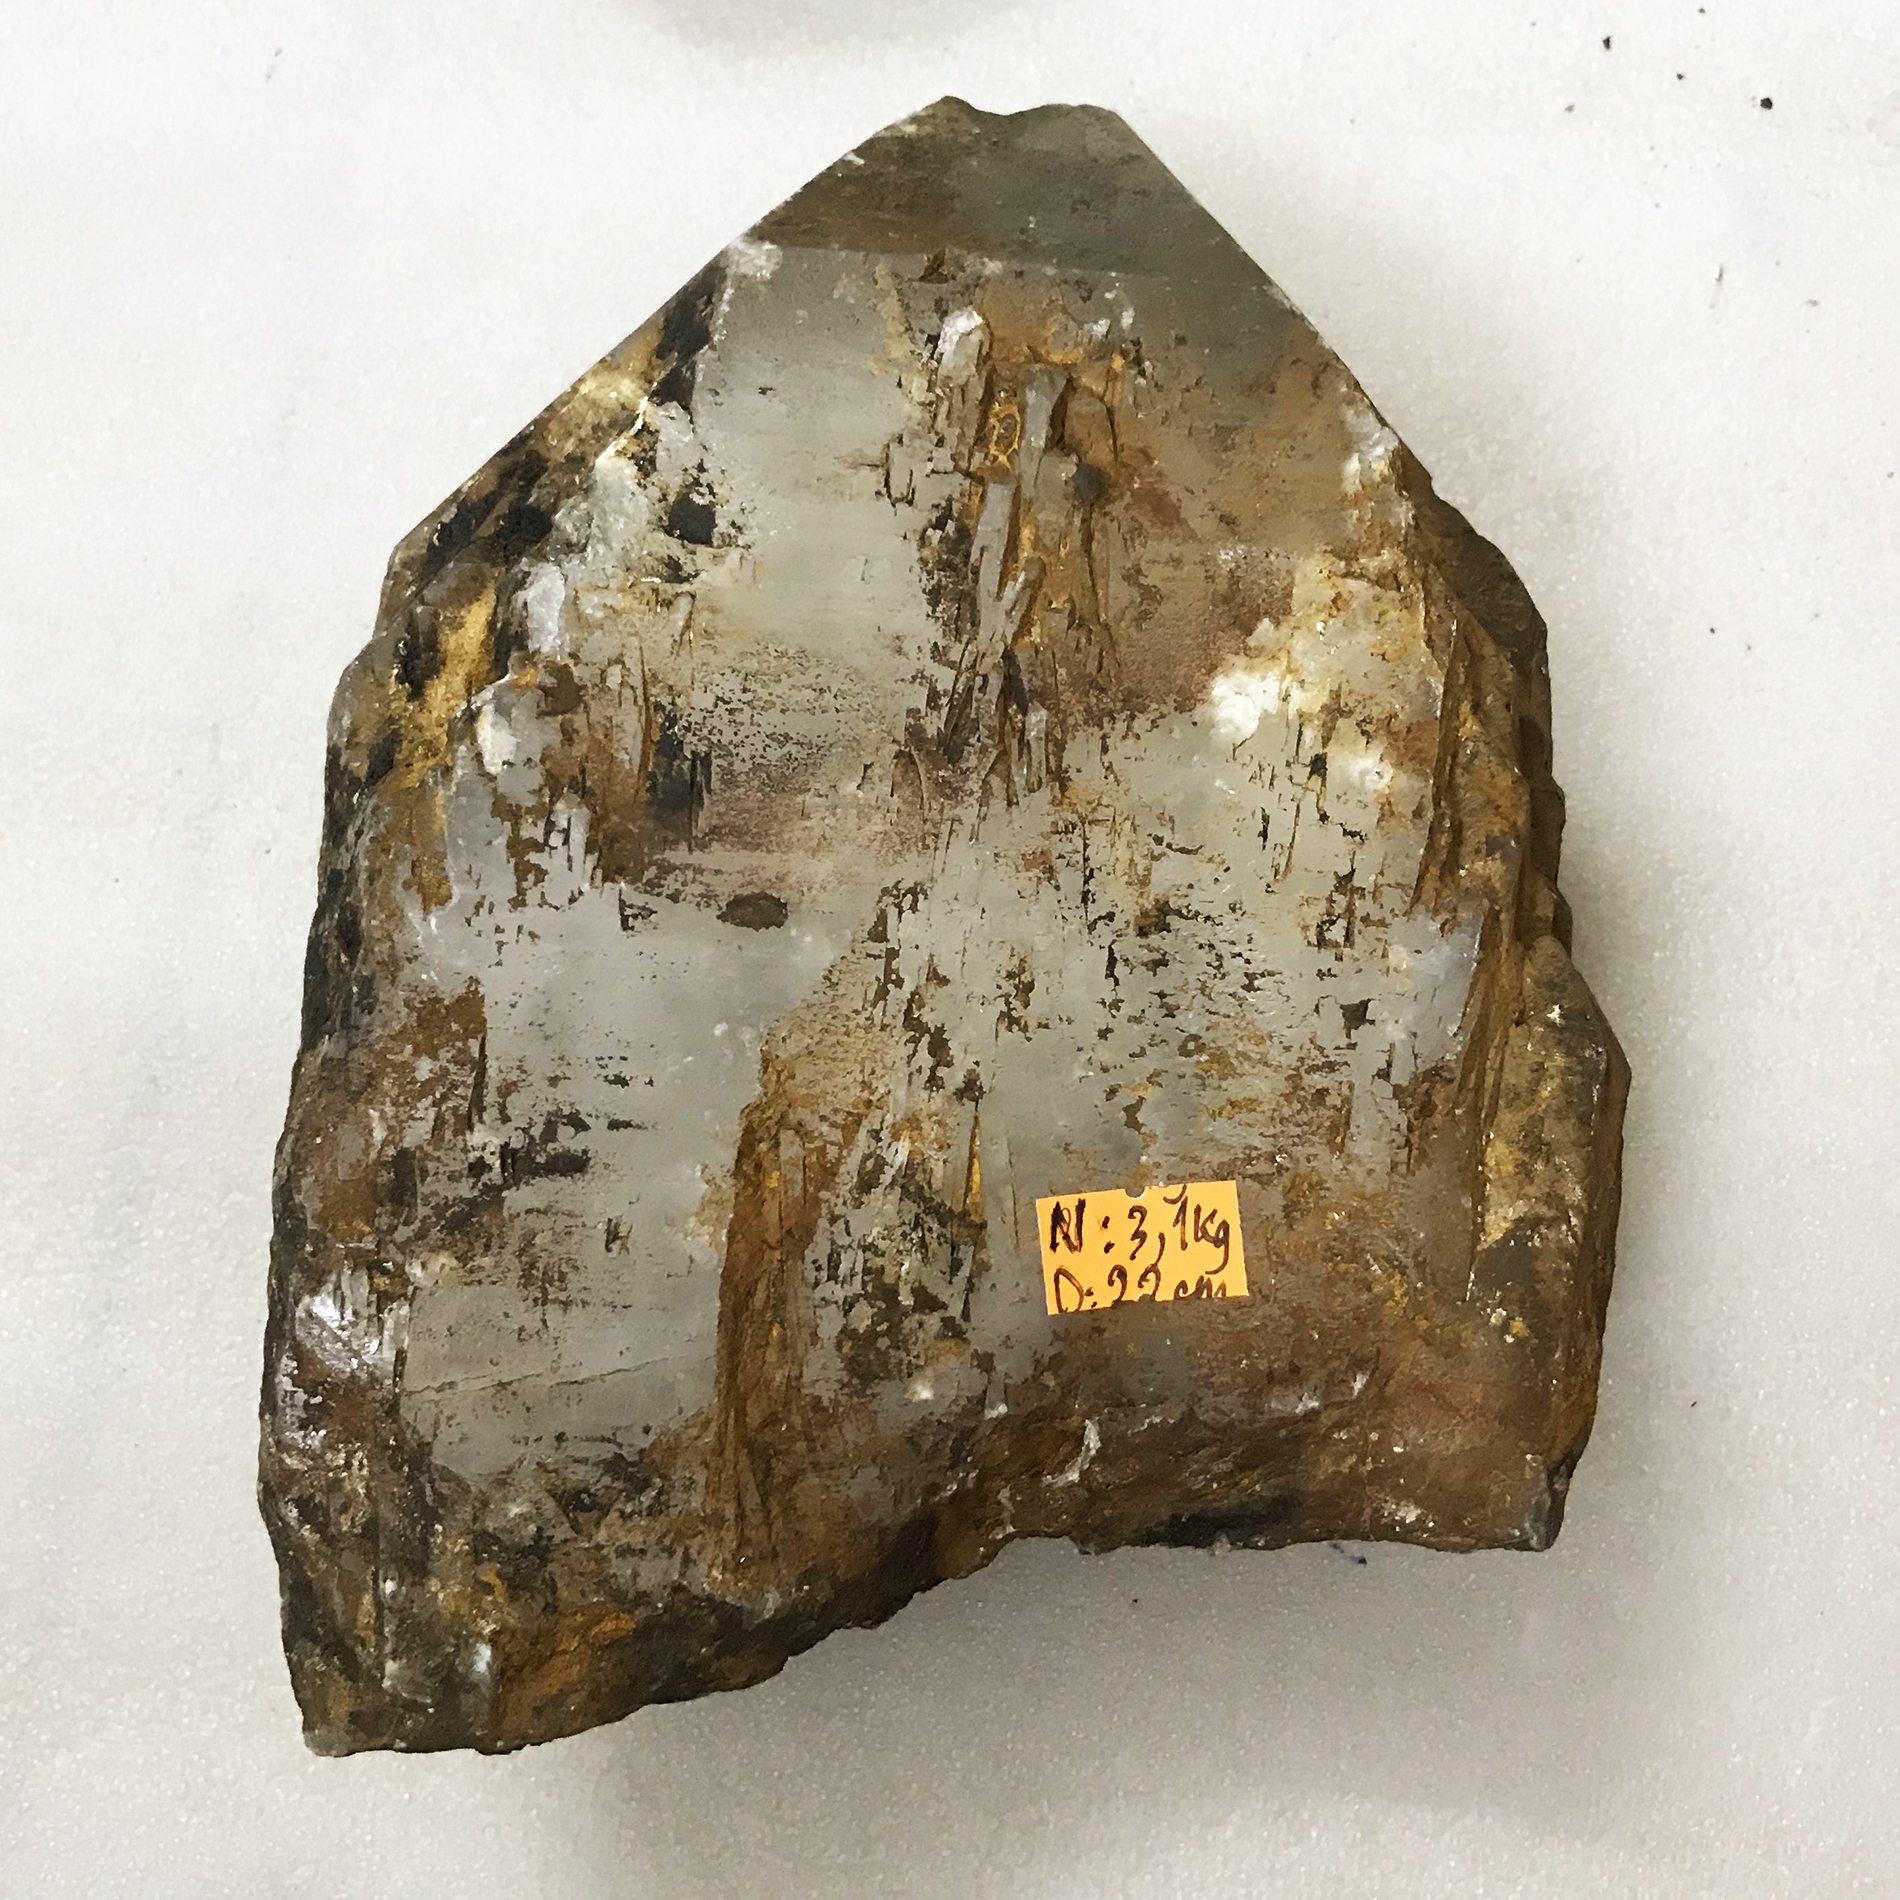 Cây đá để bàn, cục đá trấn trạch trong vắt 3 kg chống tia xạ đá thật tảng thô 100% cho người mệnh Thủy và Kim